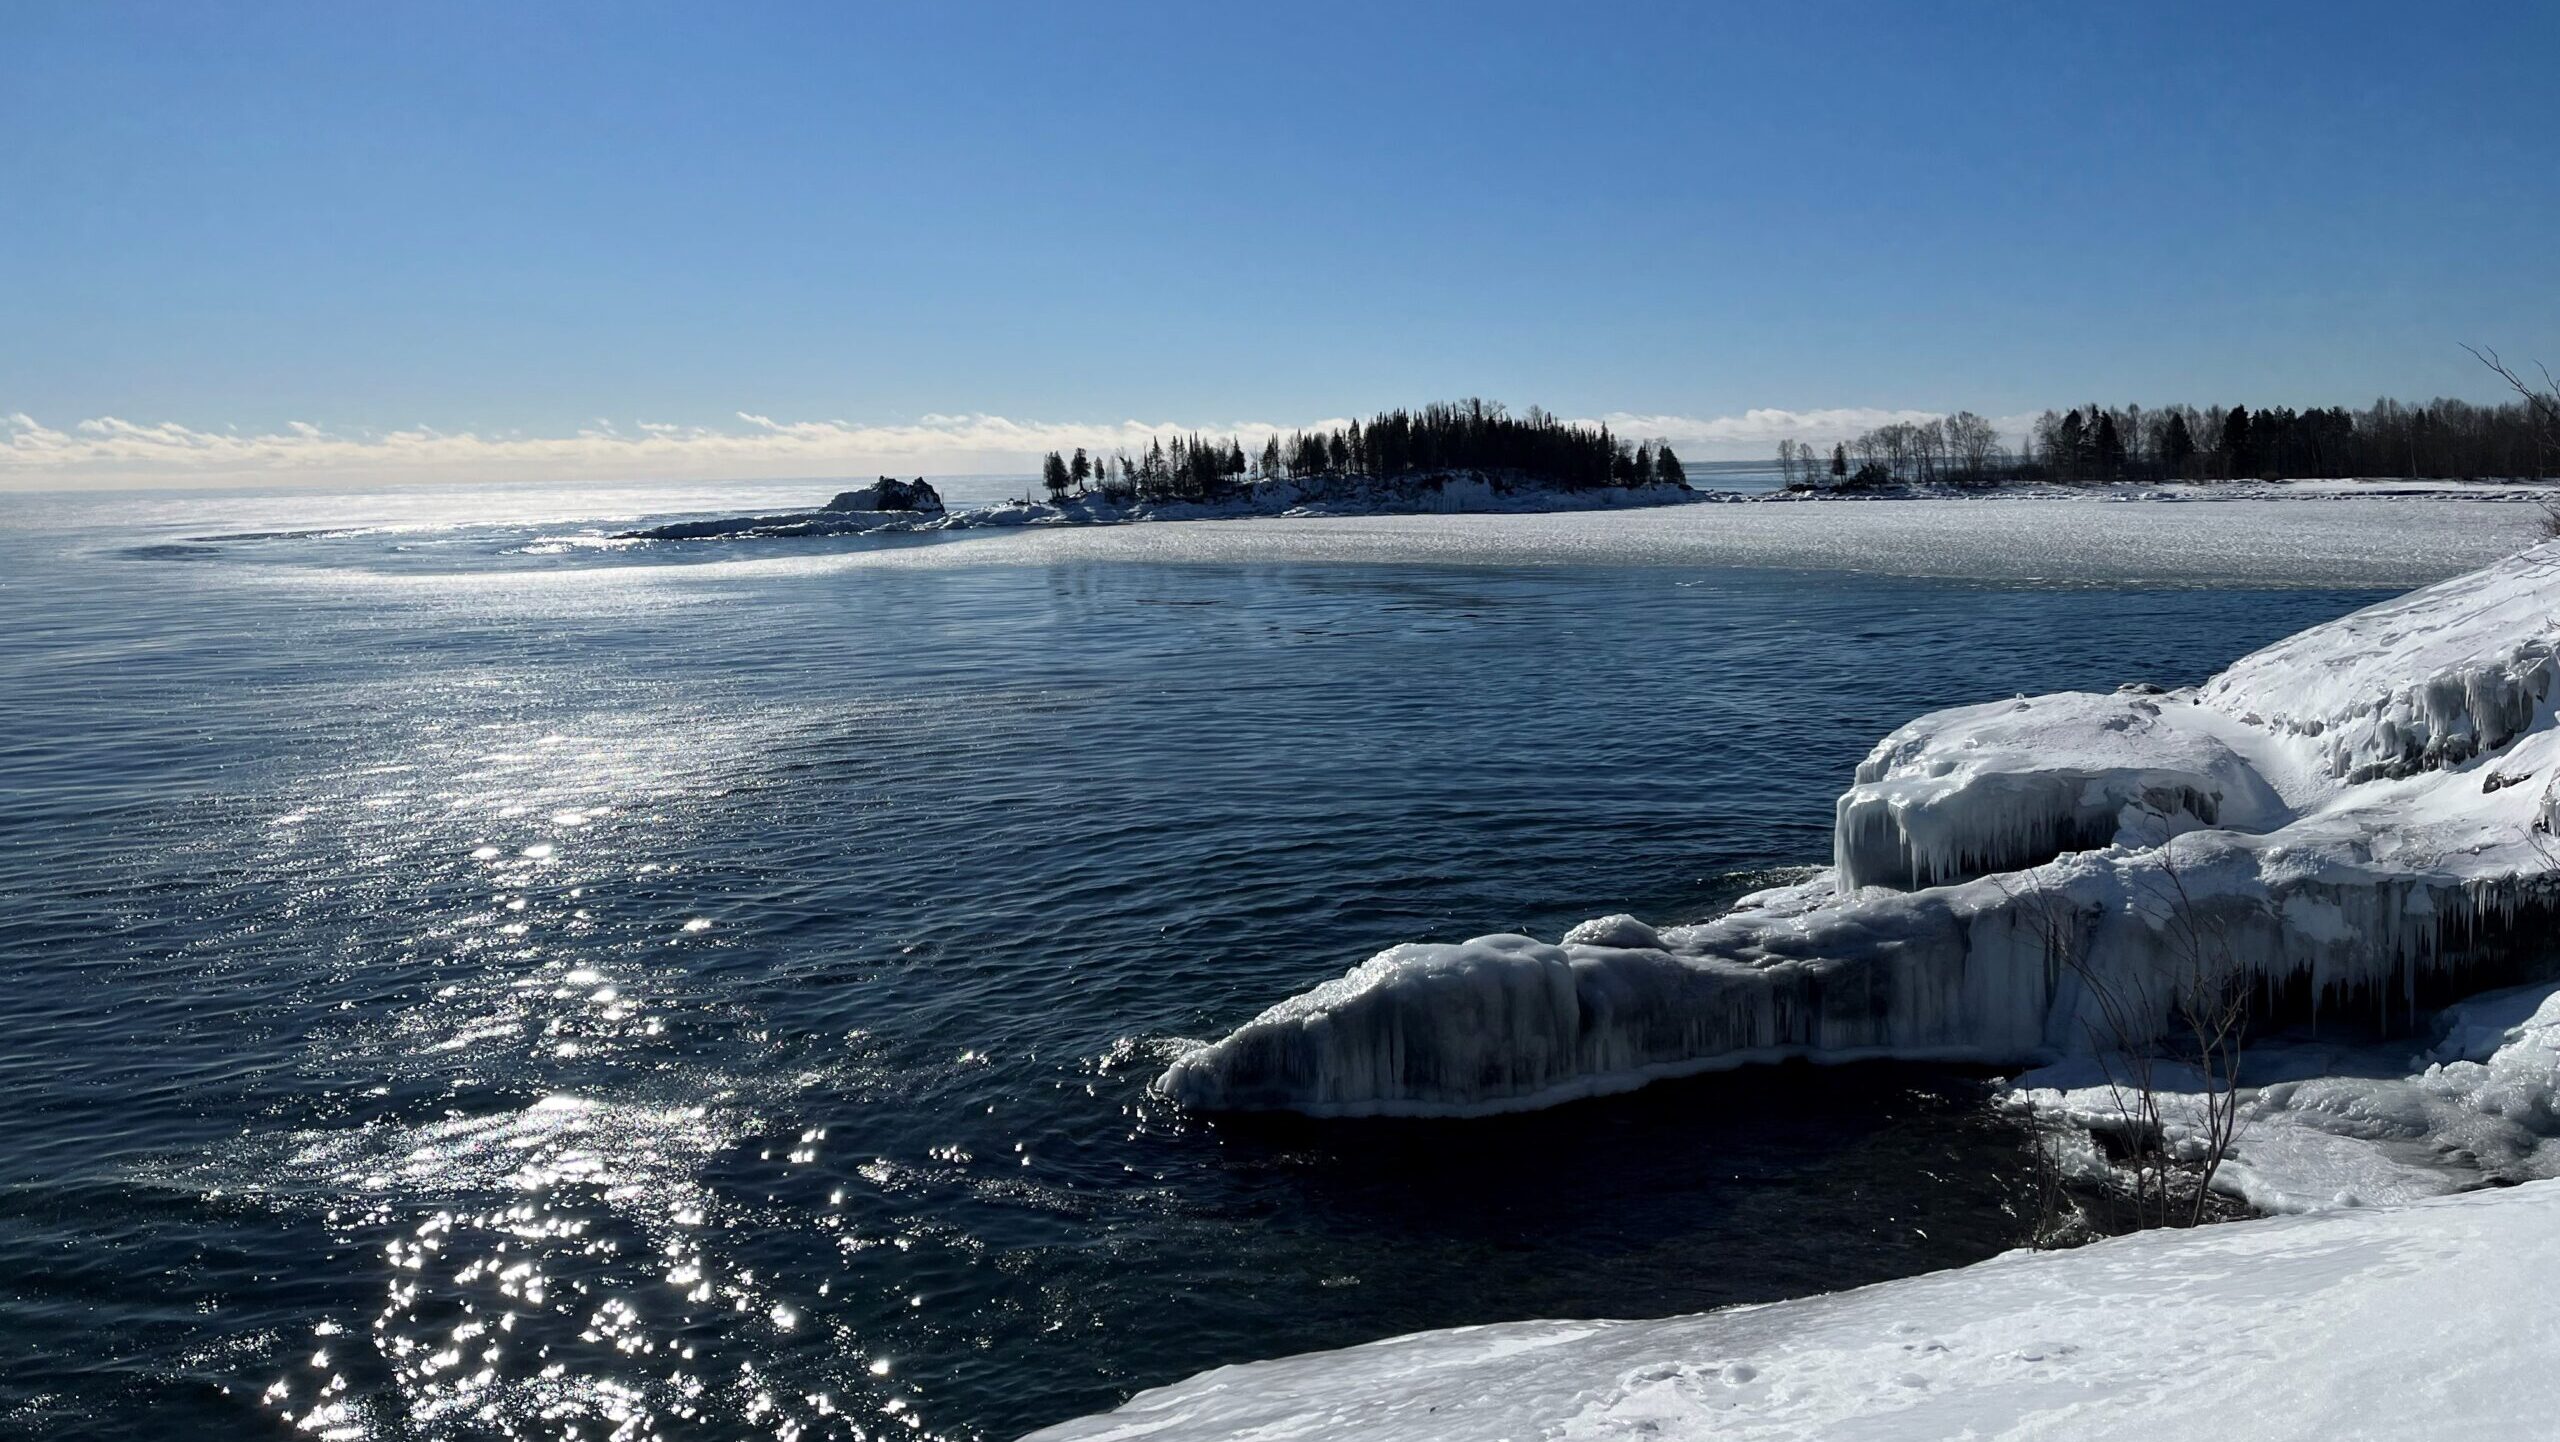 The Lake Superior shoreline in winter